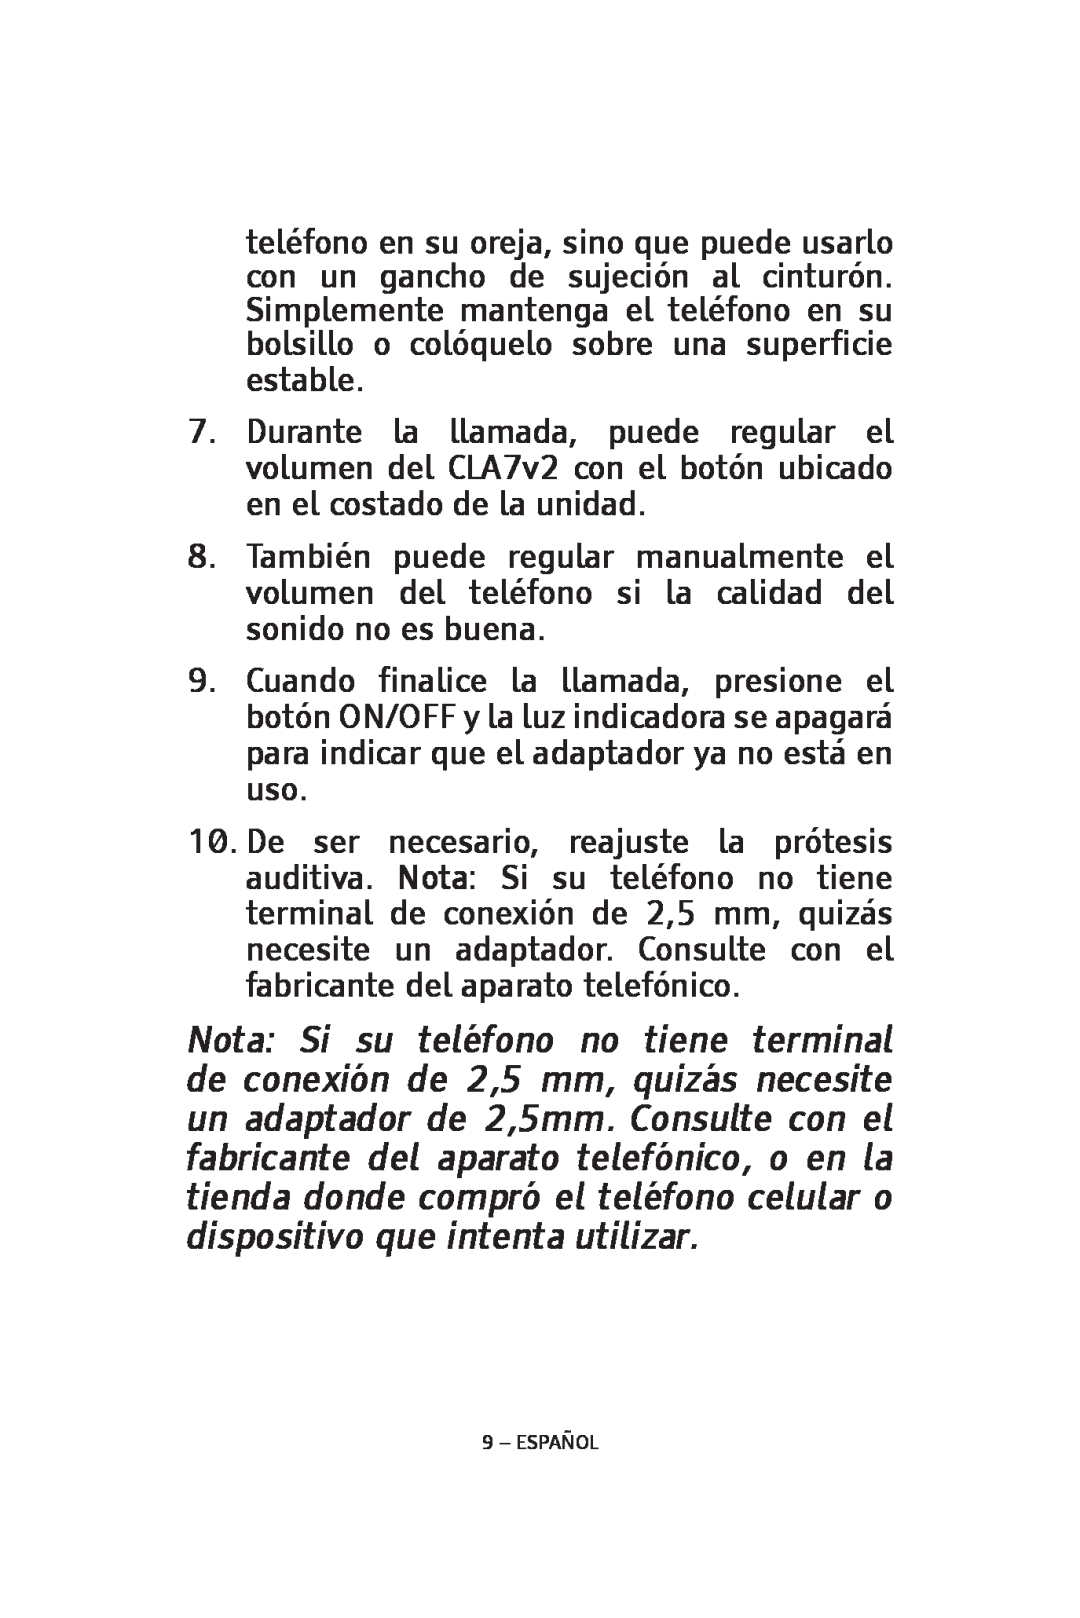 ClearSounds CLA7V2 manual Español 